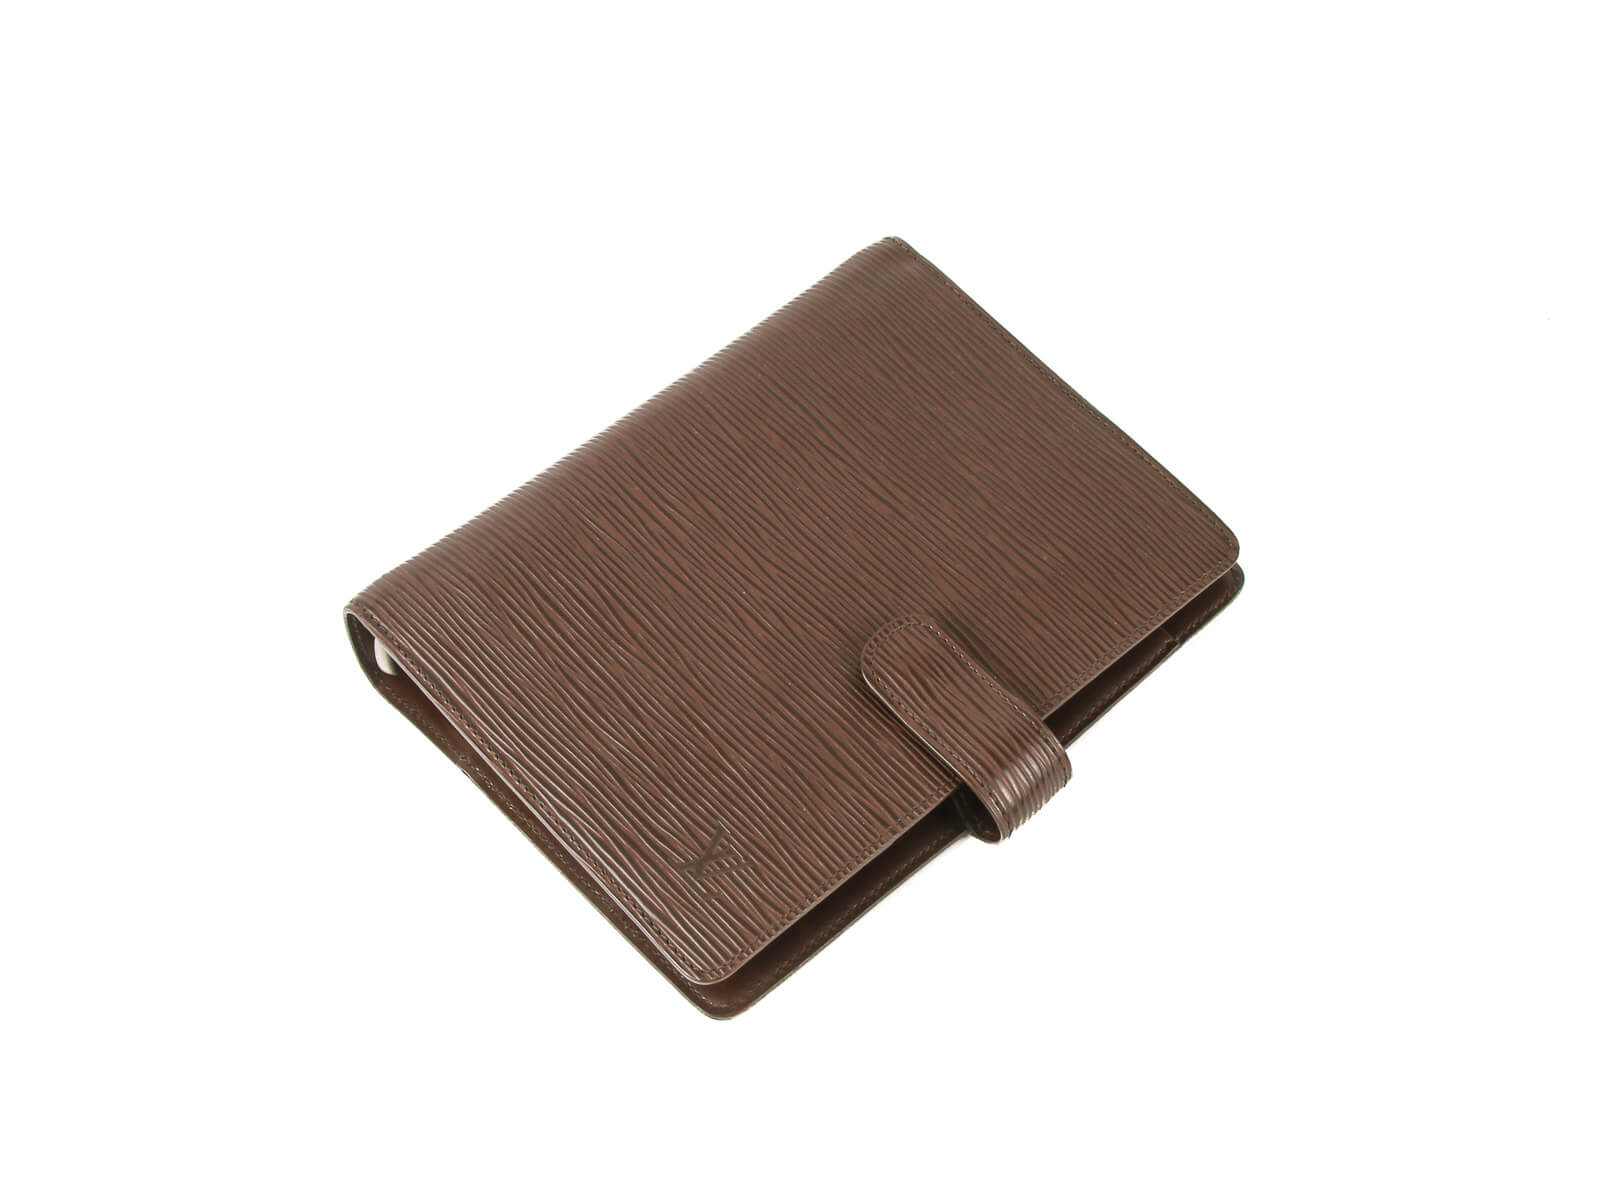 Louis Vuitton Tan Epi Agenda Mini (TH1908) – Luxury Leather Guys